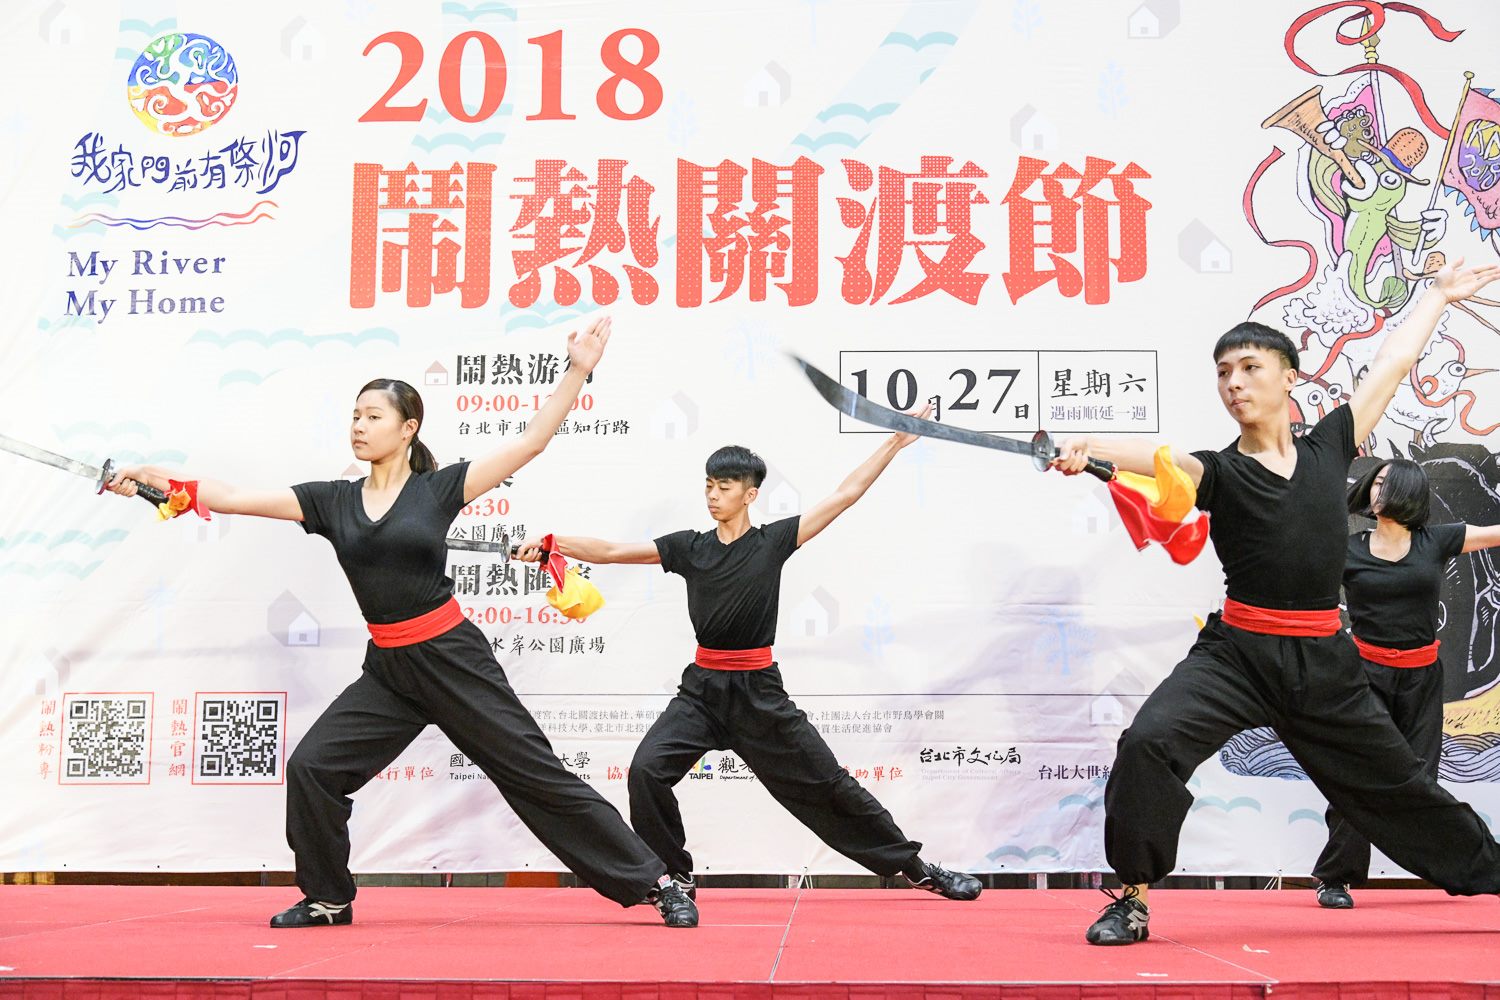 台北艺术大学舞蹈系学生结合传统武术与舞蹈的开场表演